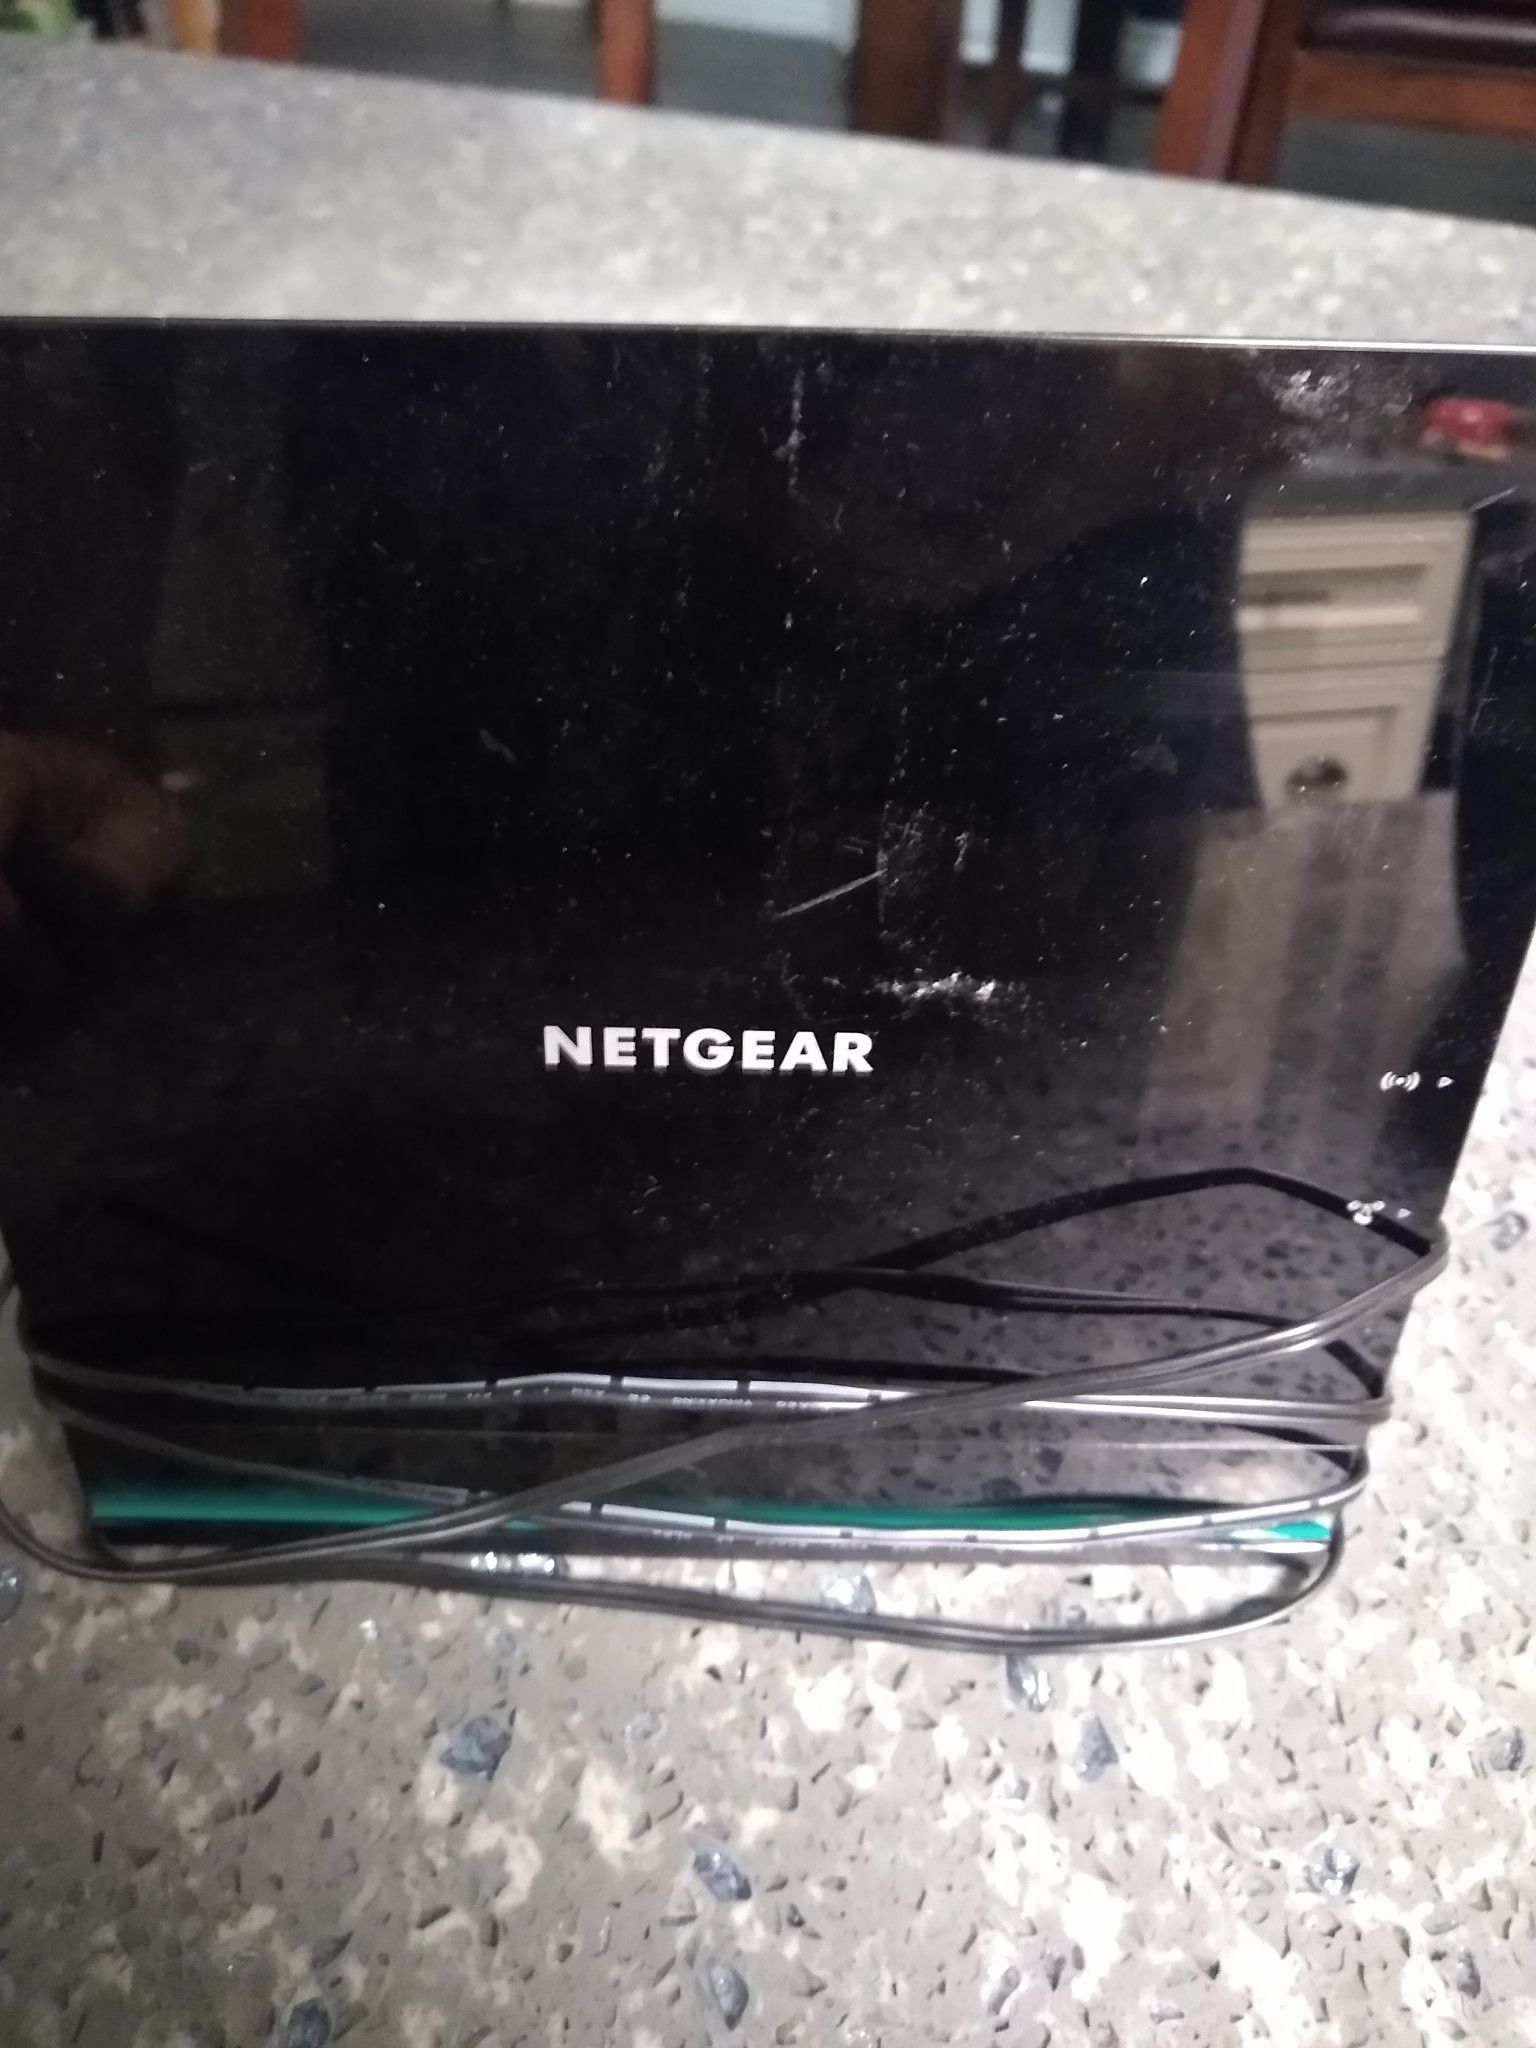 Netgear R6100 router